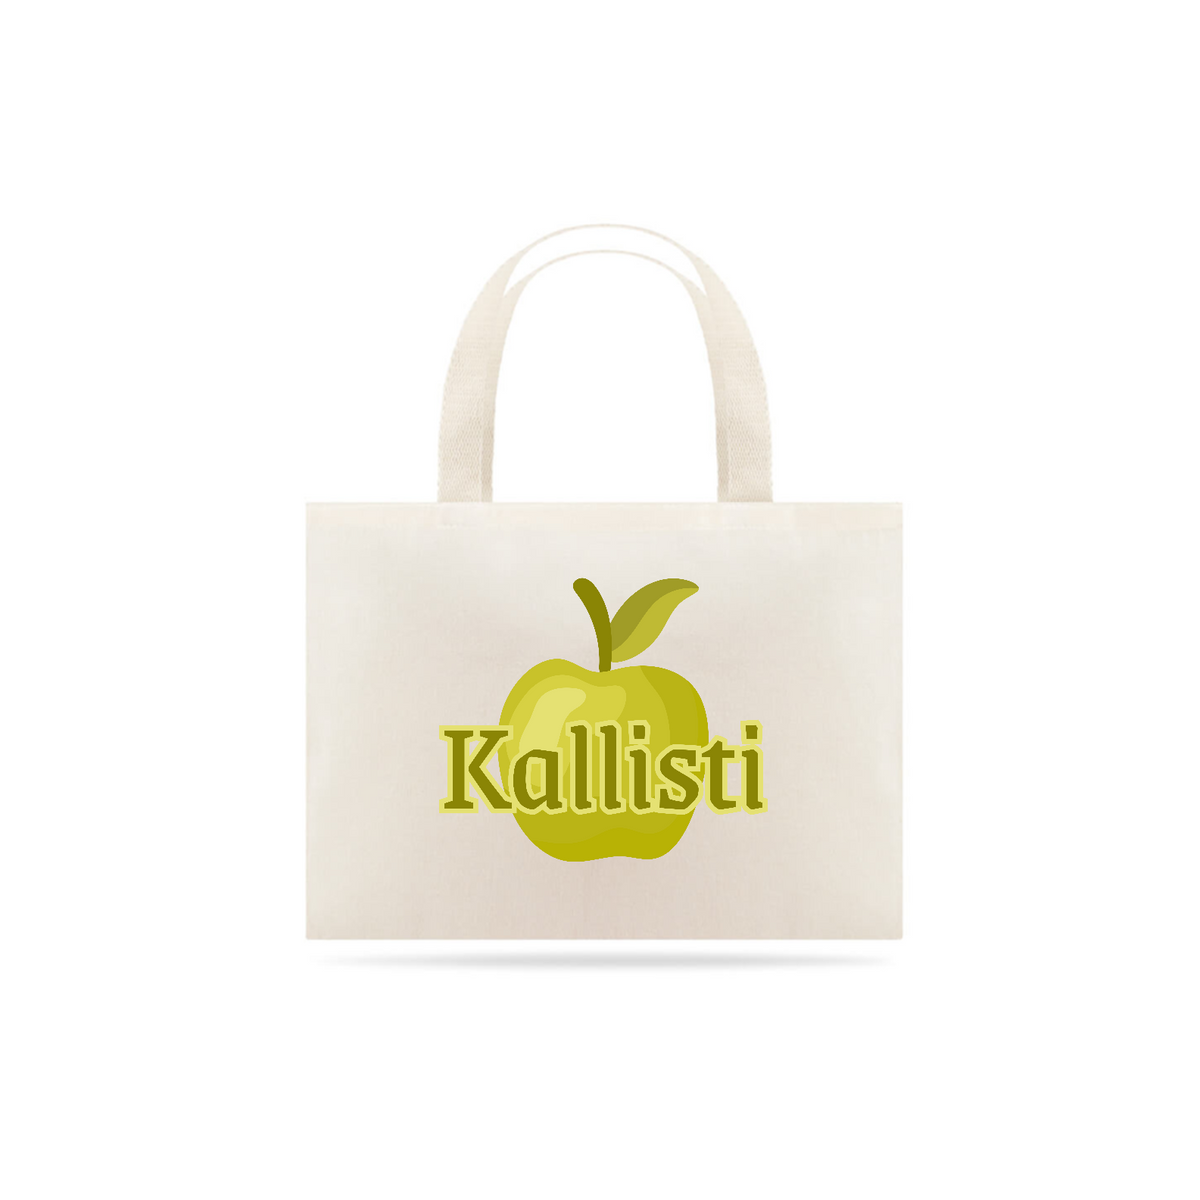 Nome do produto: Ecobag Kallisti - Discordianismo